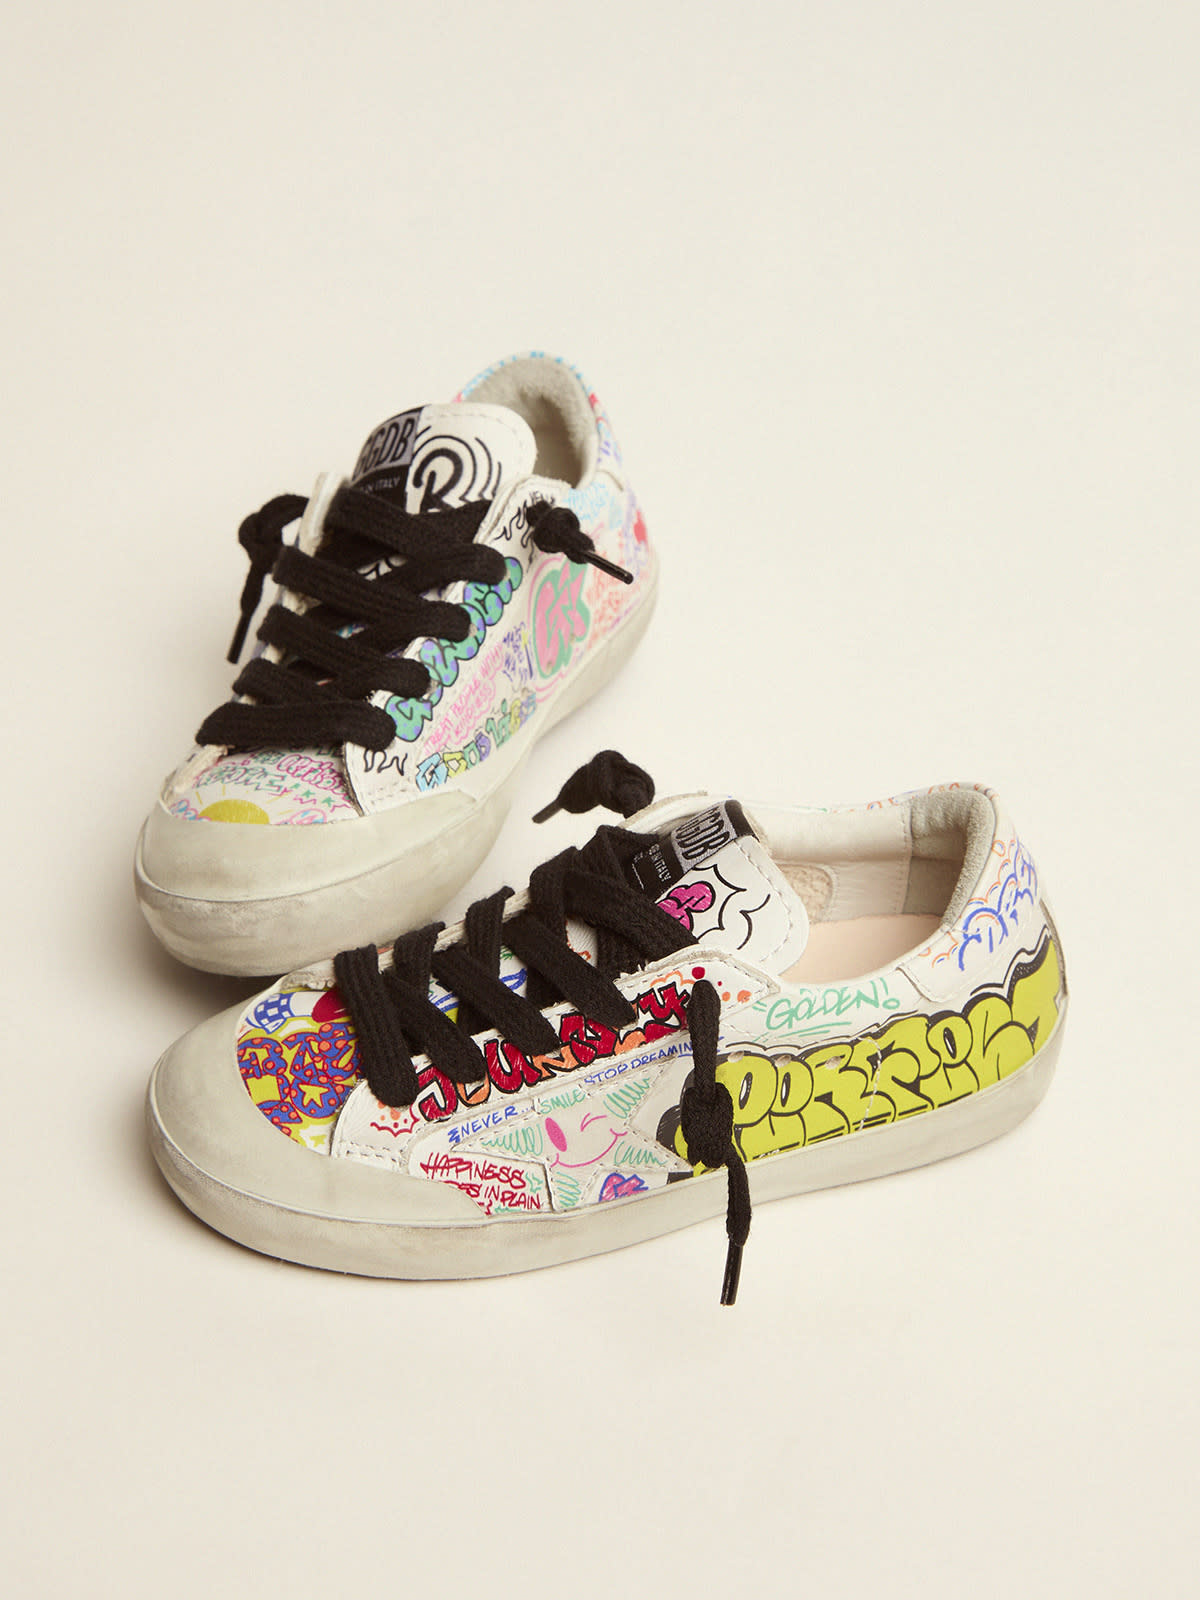 Super-Star junior sneakers in white leather with multicolored graffiti ...